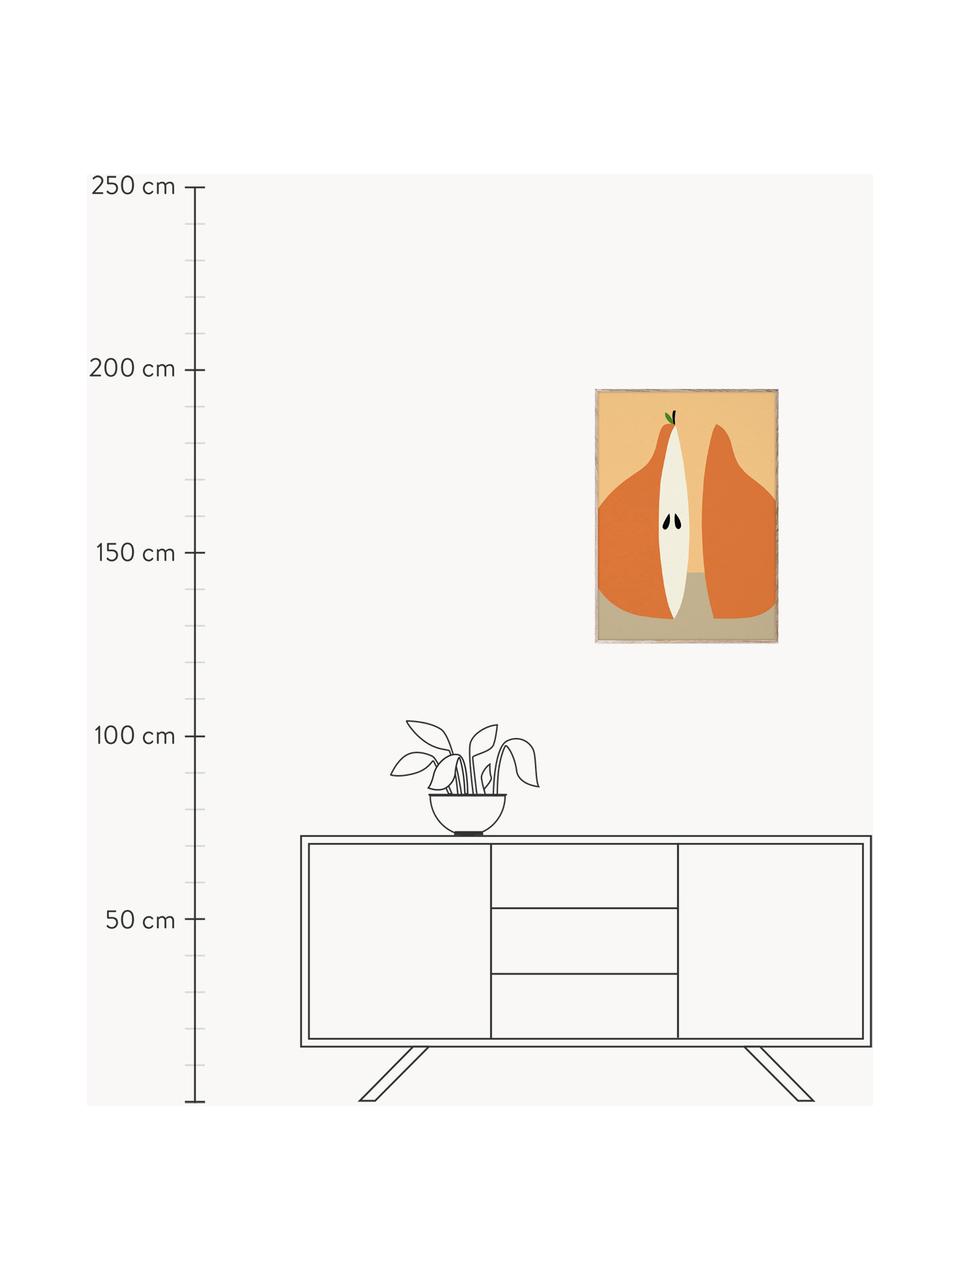 Plakát Poire, 210g matný papír Hahnemühle, digitální tisk s 10 barvami odolnými vůči UV záření, Oranžová, greige, Š 30 cm, V 40 cm